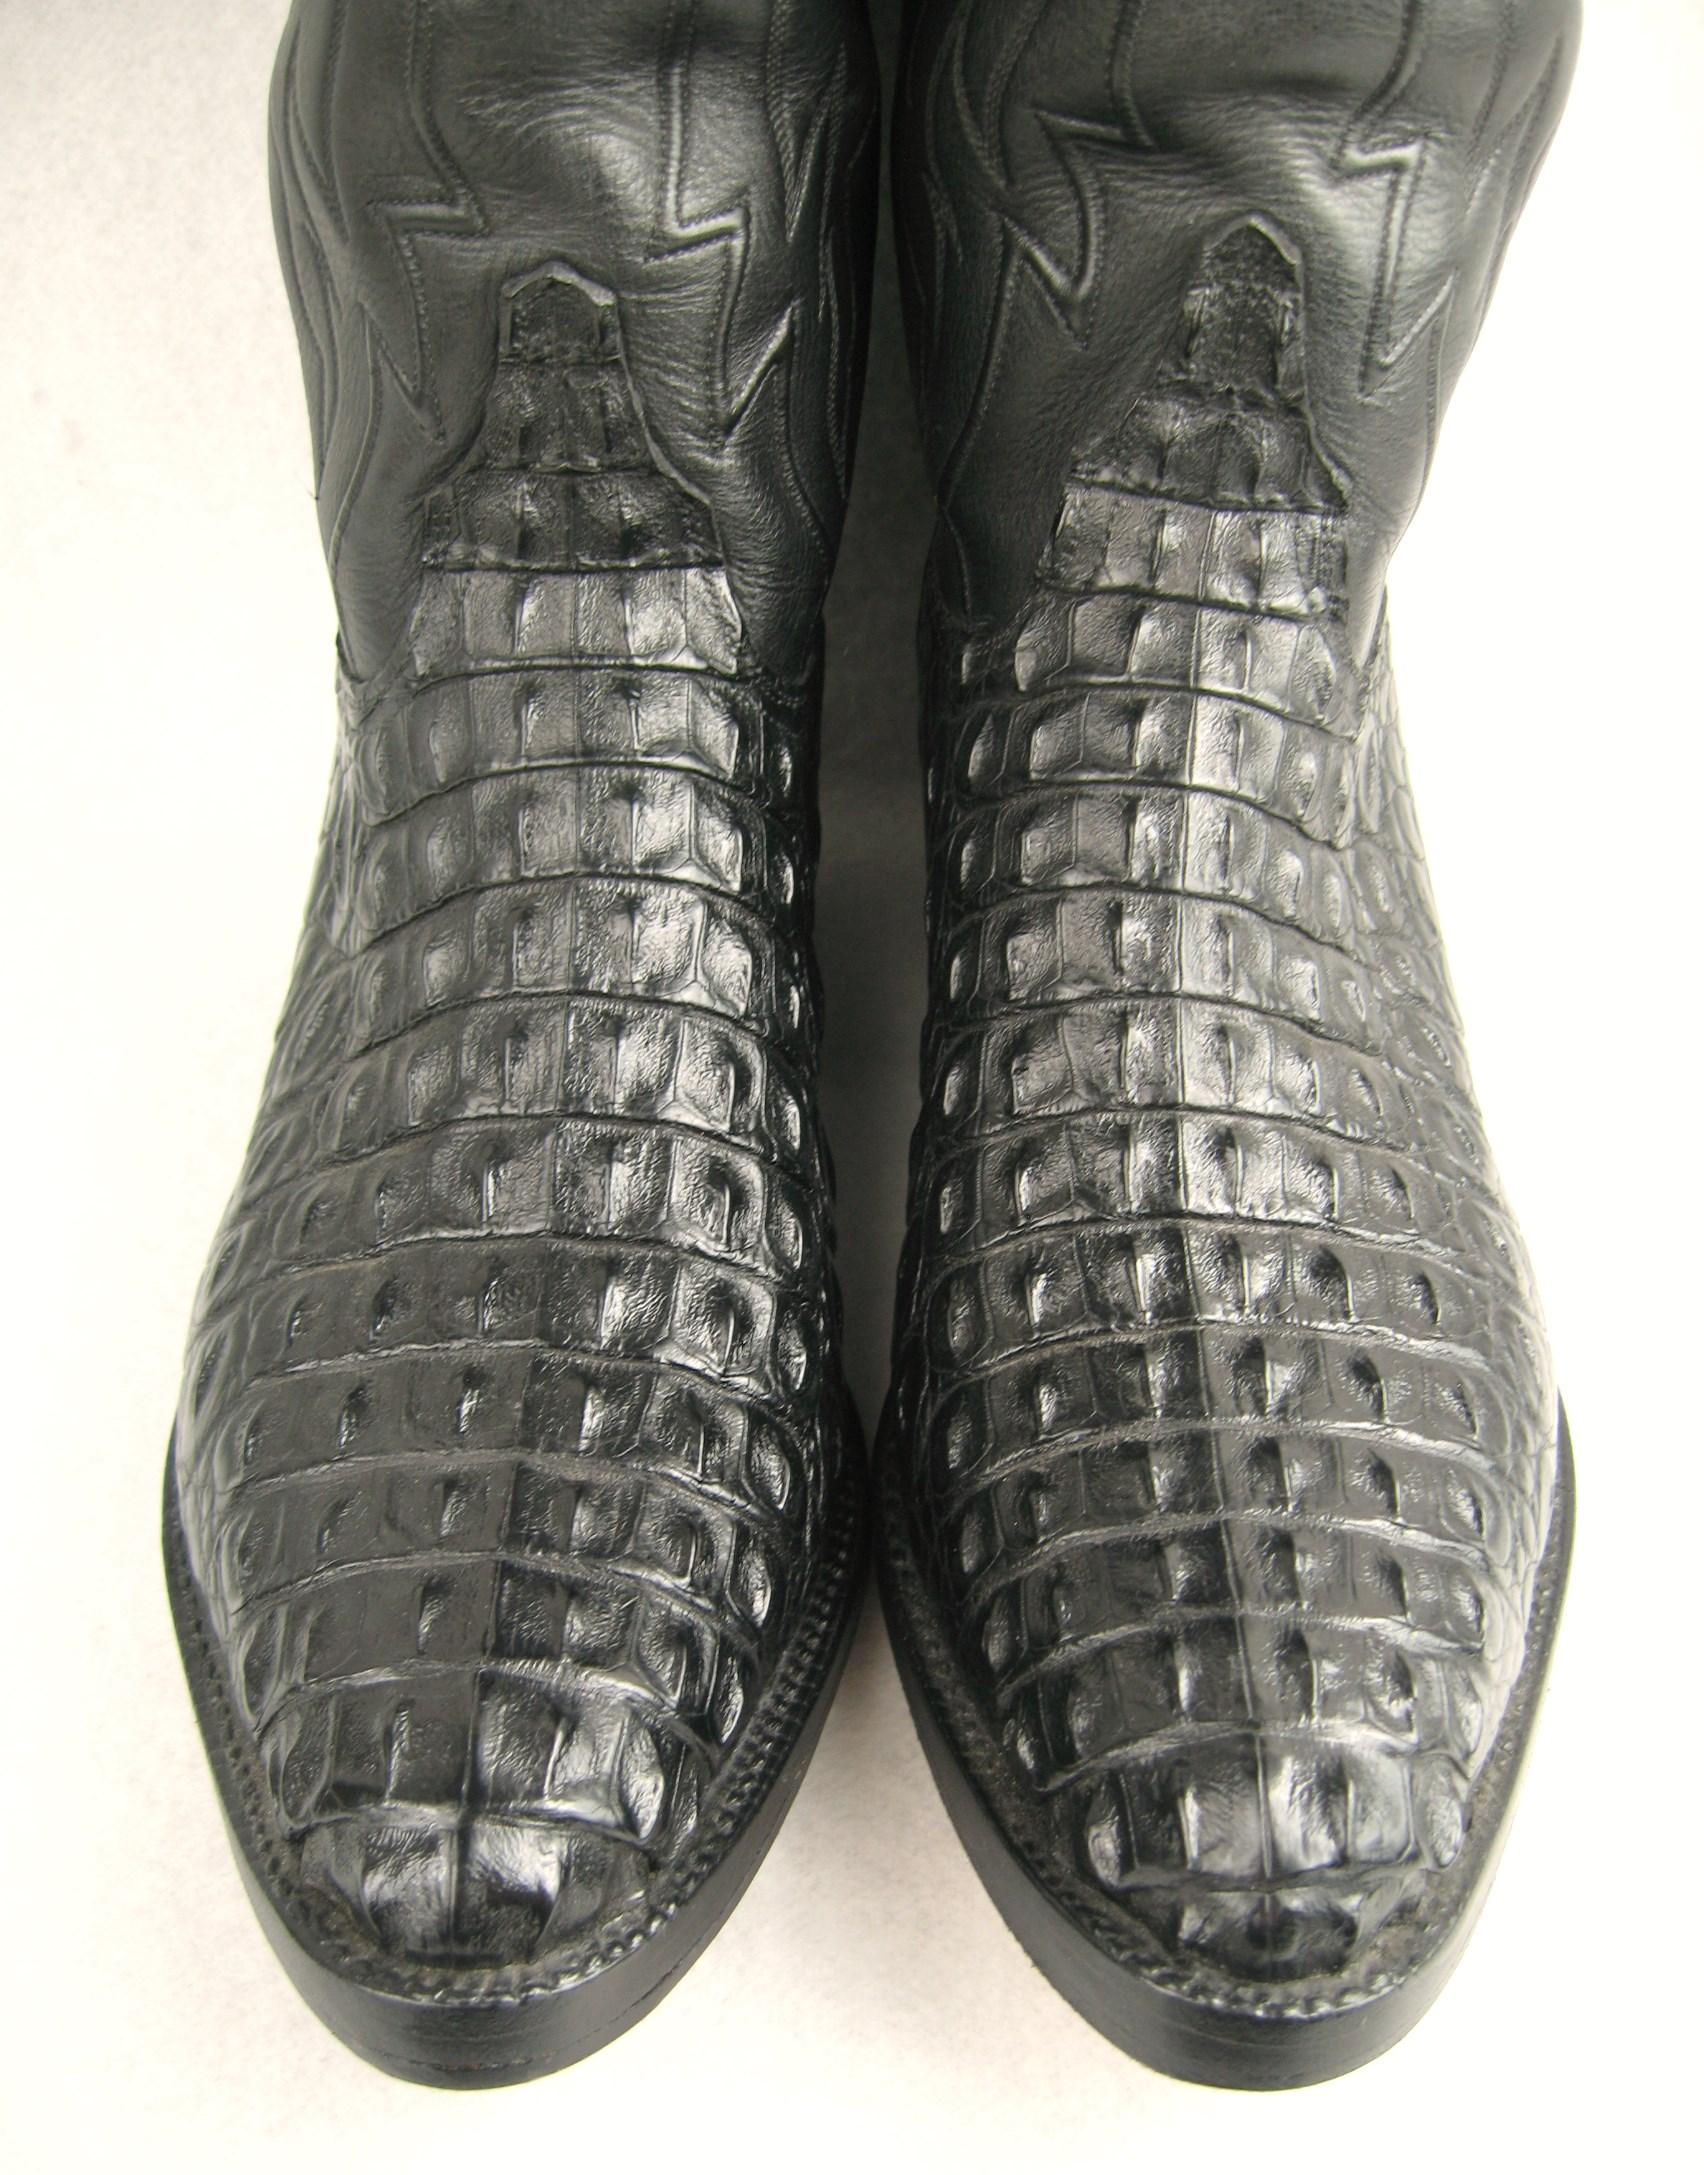  Lucchese Black Horned Back Alligator Cowboy Boots, Men's Size 10 D, in Excellent Pre-Owned Condition. Bottes souples et douces faites à la main.   N'hésitez pas à consulter notre vitrine pour plus de mode, car nous avons à la fois de la mode